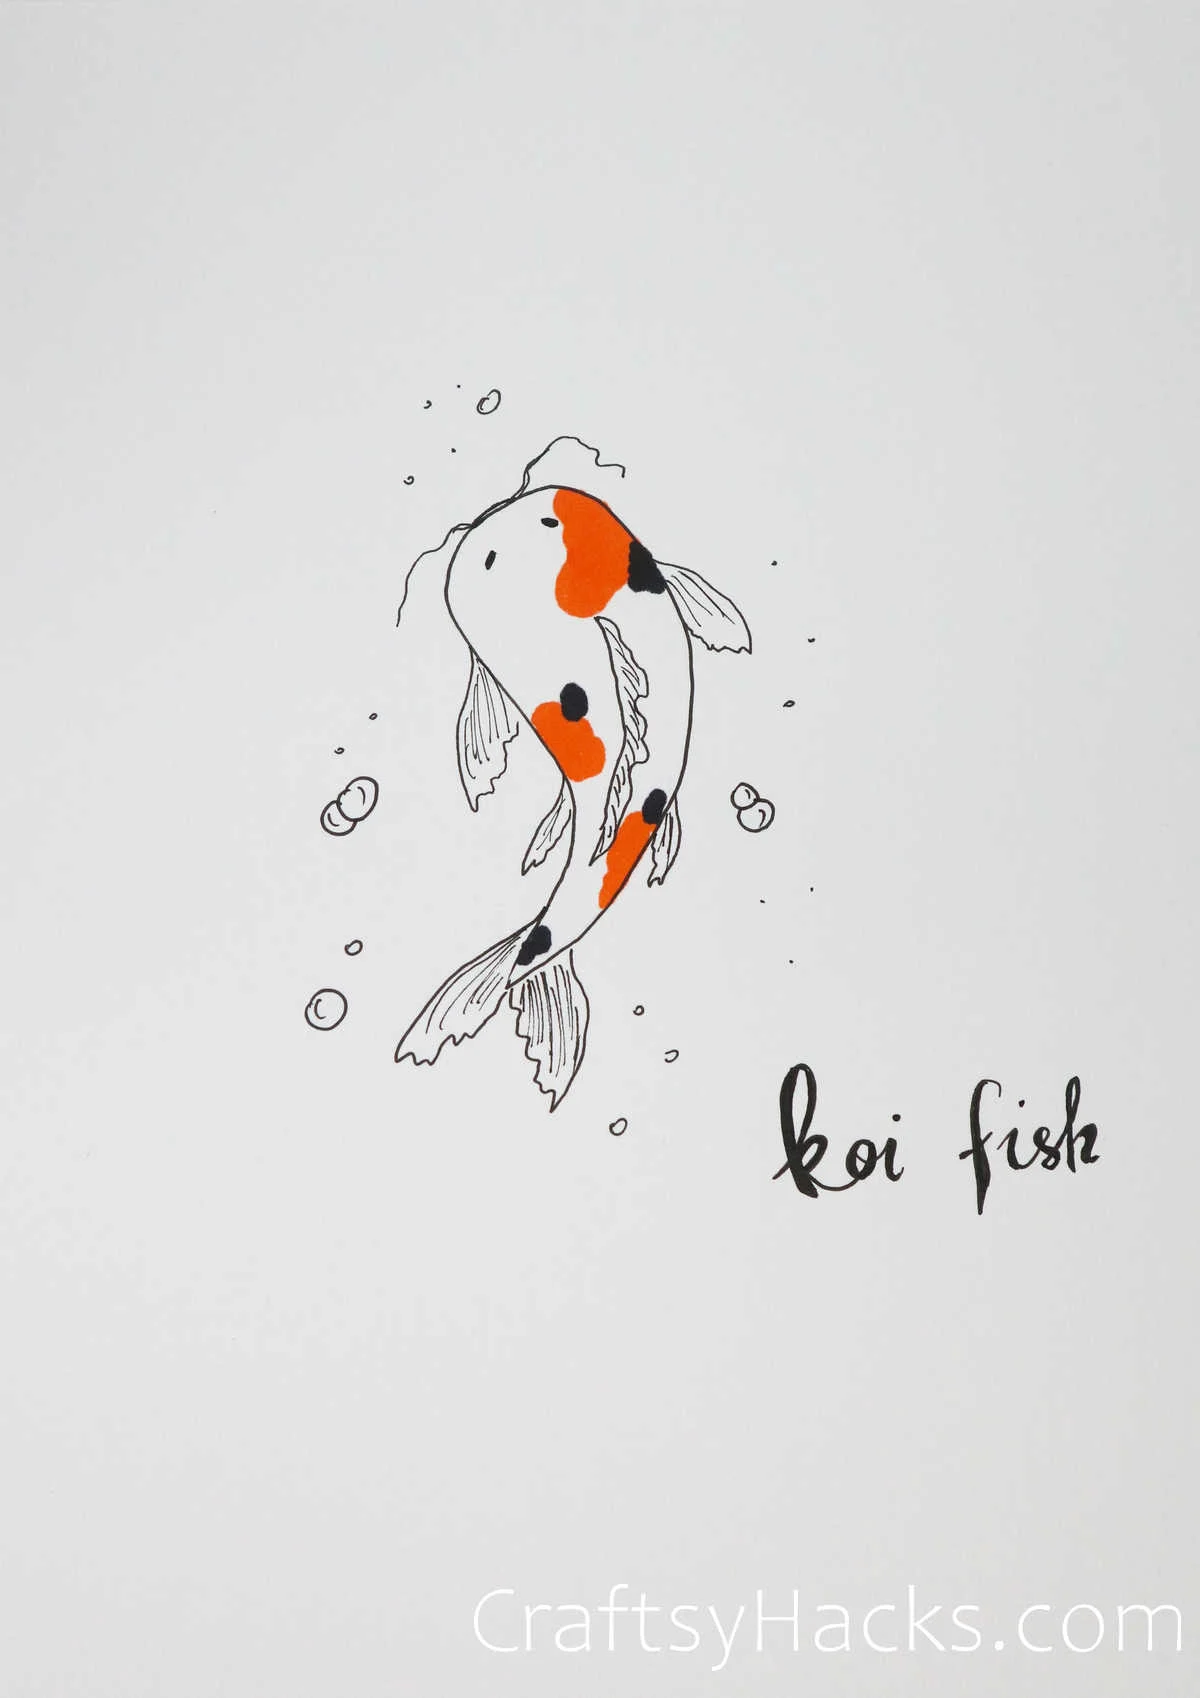 koi fish drawing